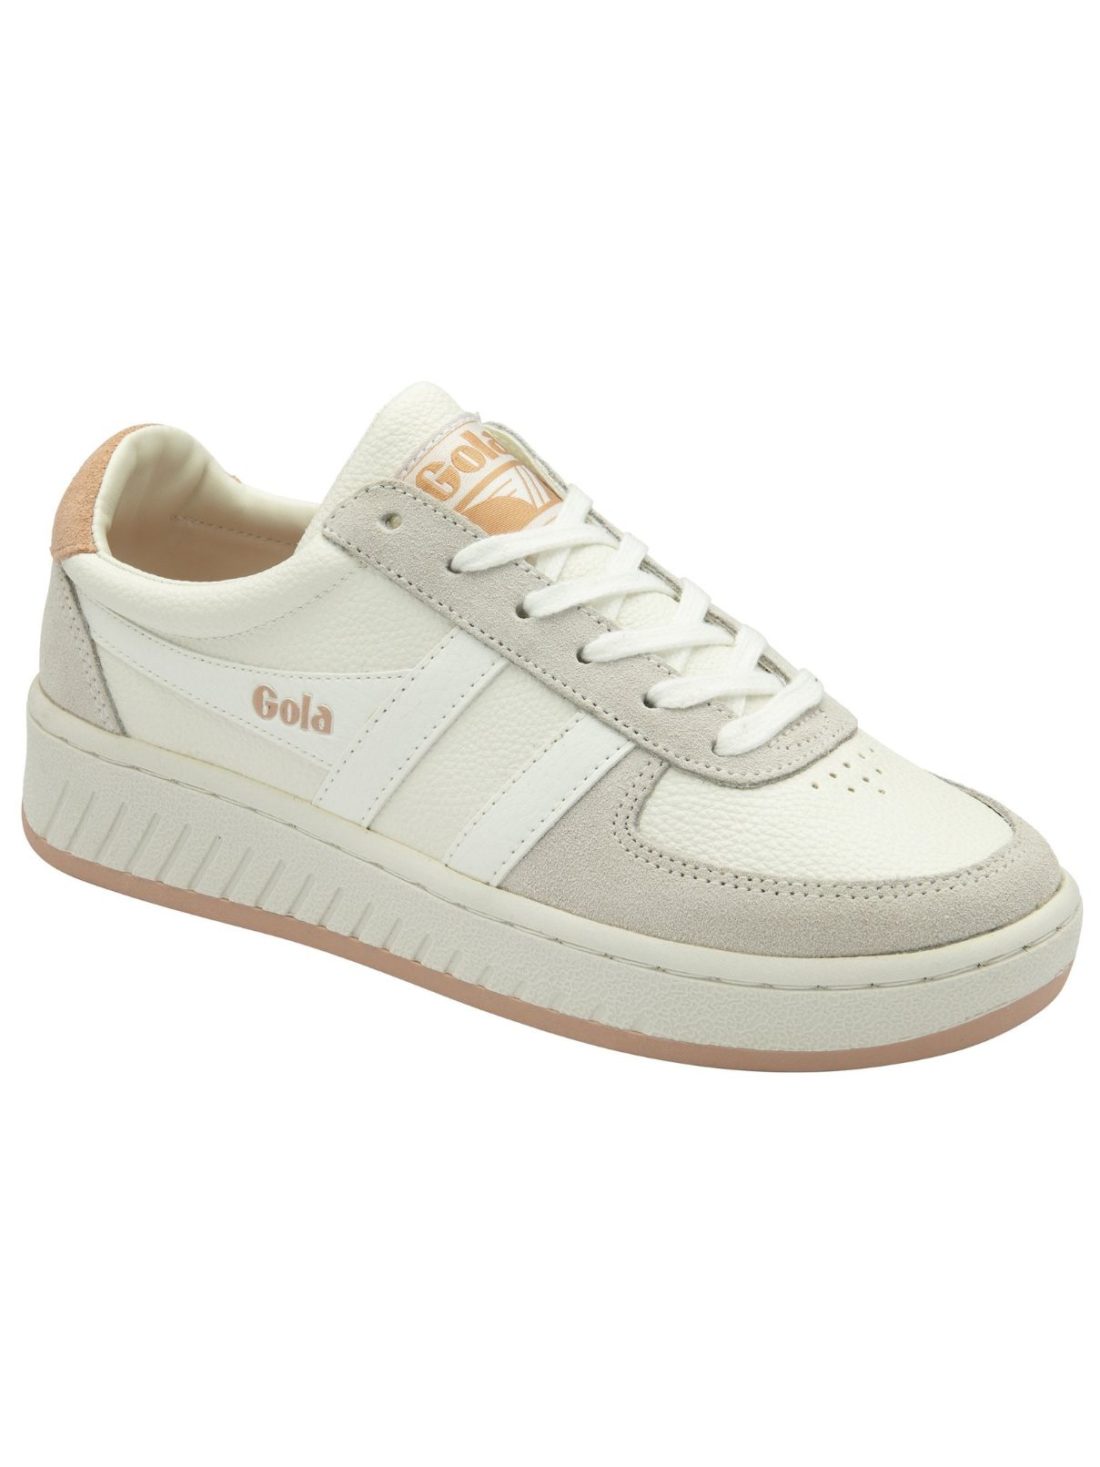 gola grandslamm 88 sneakers in white/pink pearl